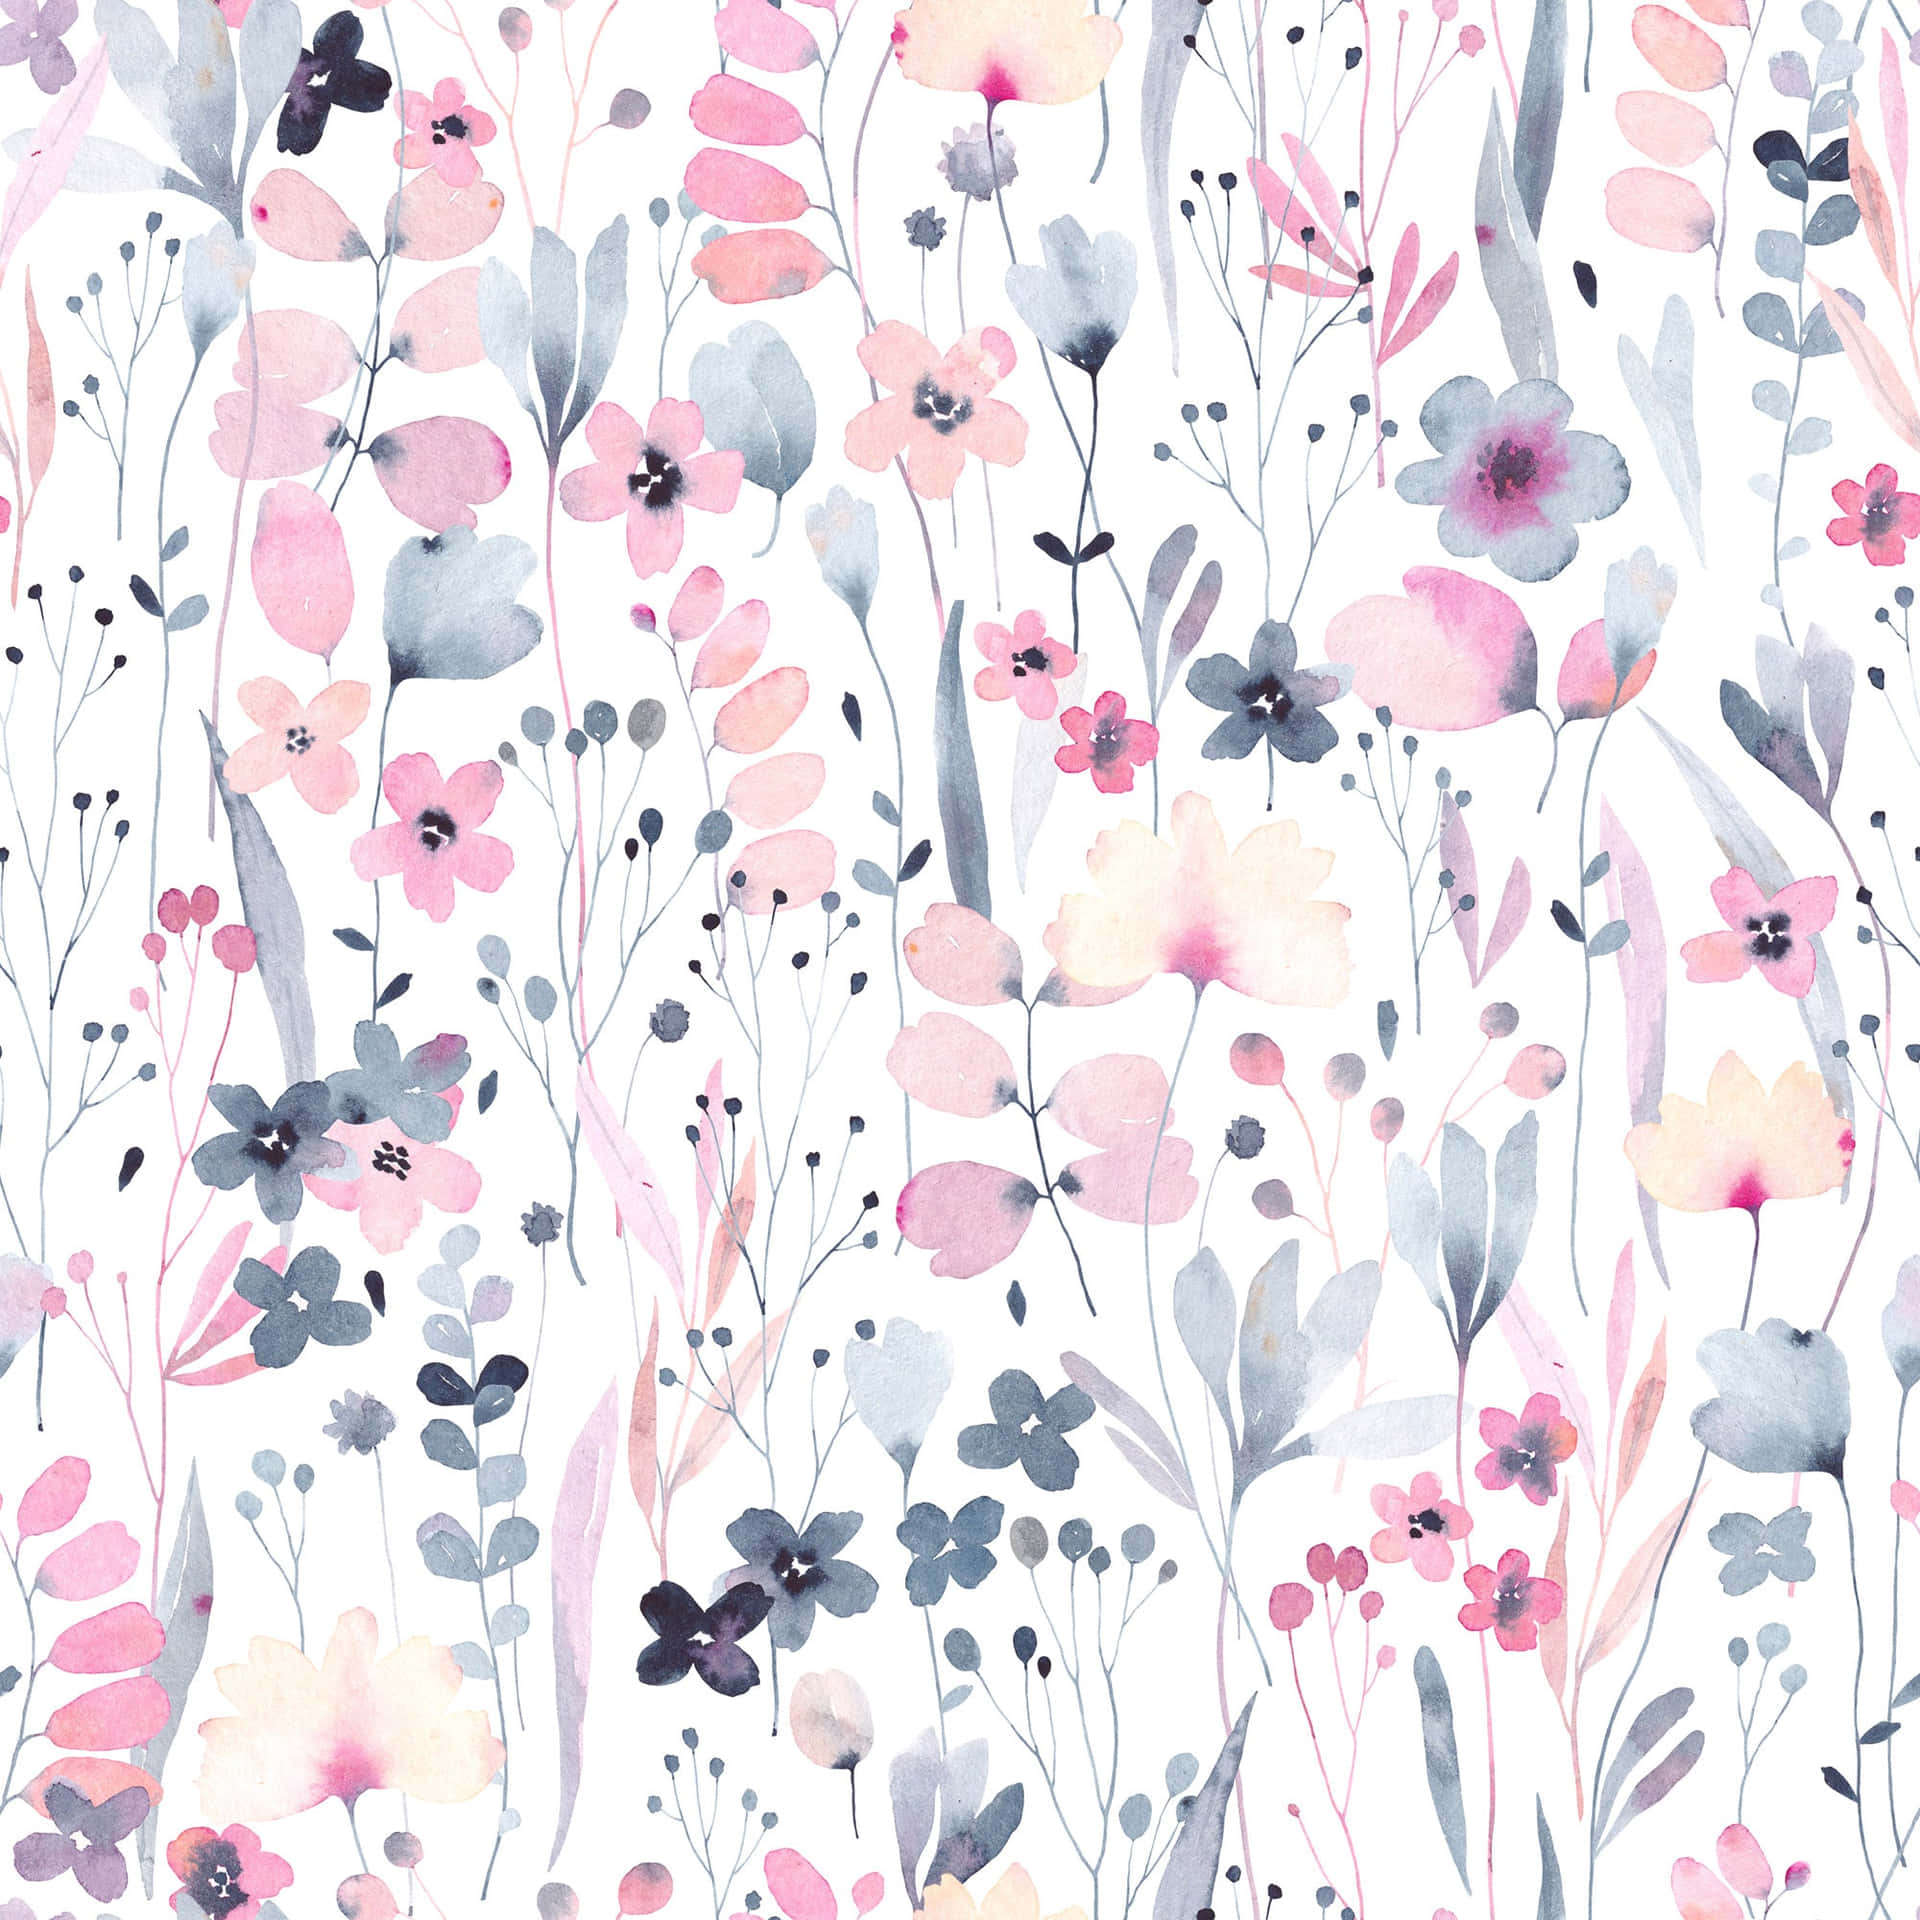 En elegant pink og hvid floral design til at bringe glæde til enhver plads. Wallpaper